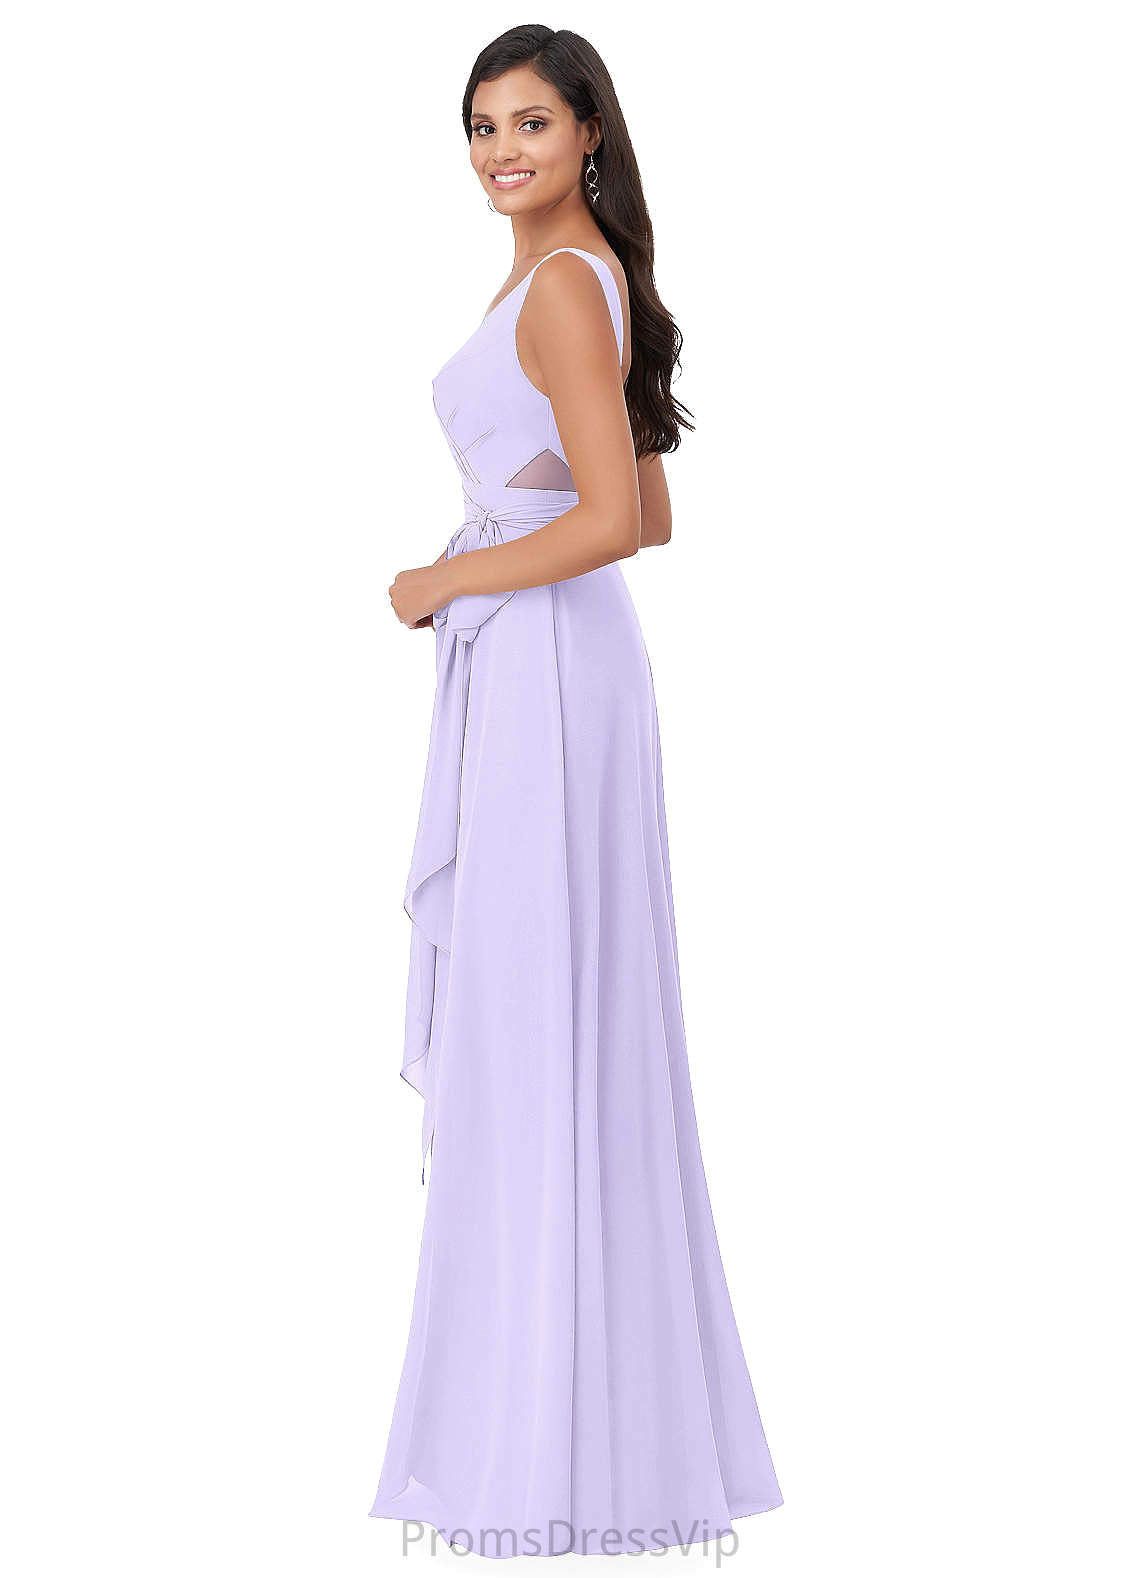 Madeline High Low Sleeveless A-Line/Princess V-Neck Empire Waist Bridesmaid Dresses